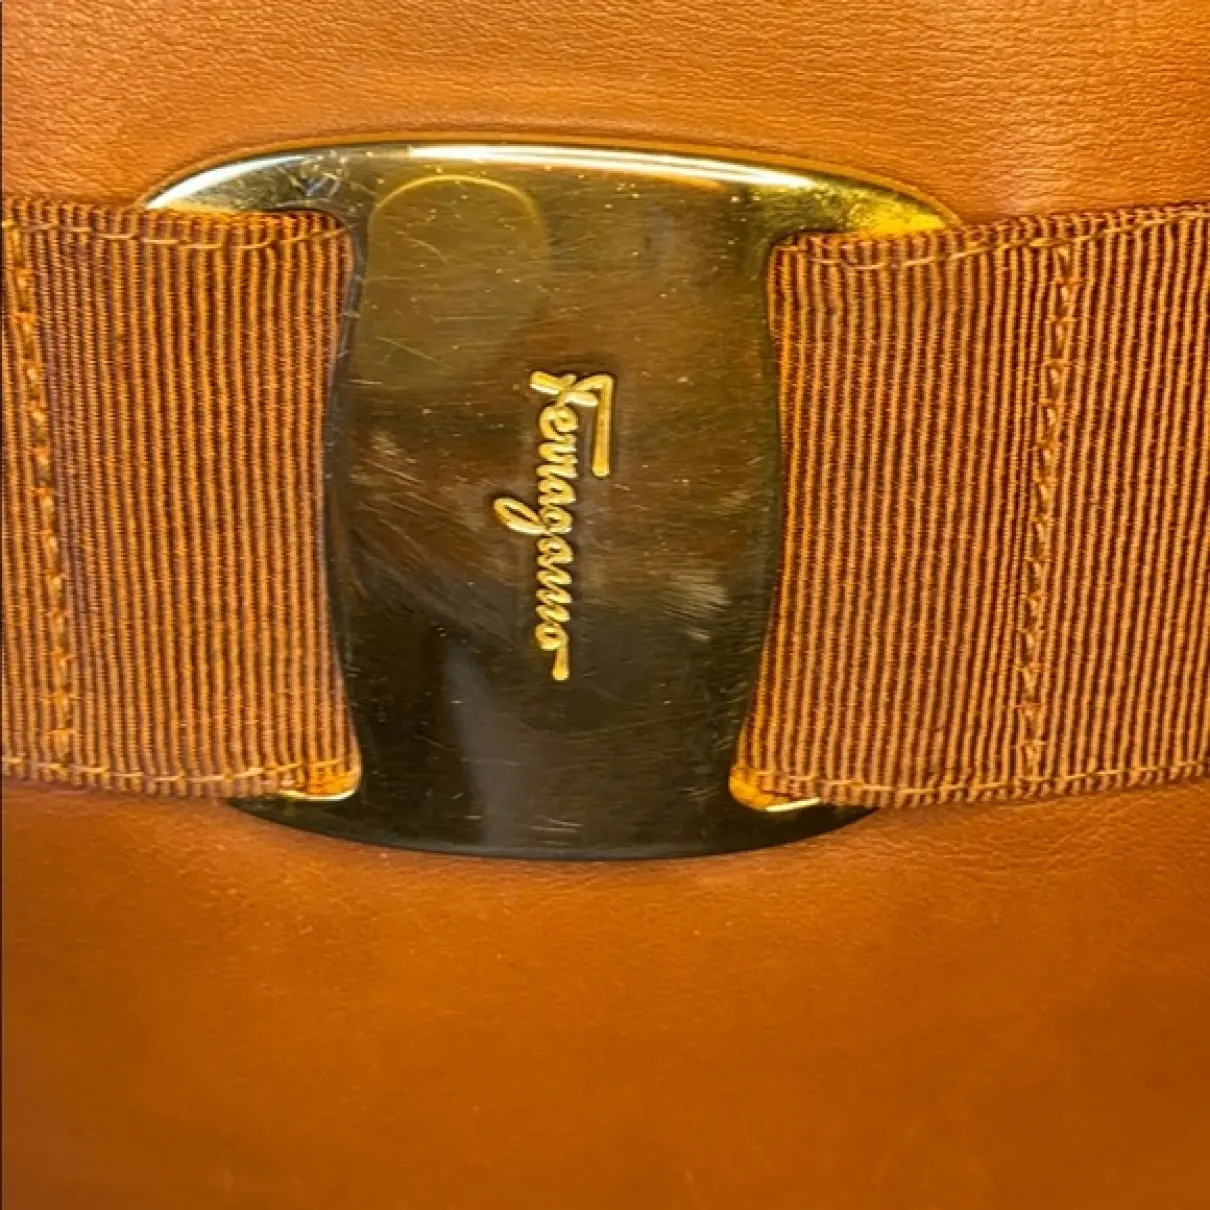 Buy Salvatore Ferragamo Leather backpack online